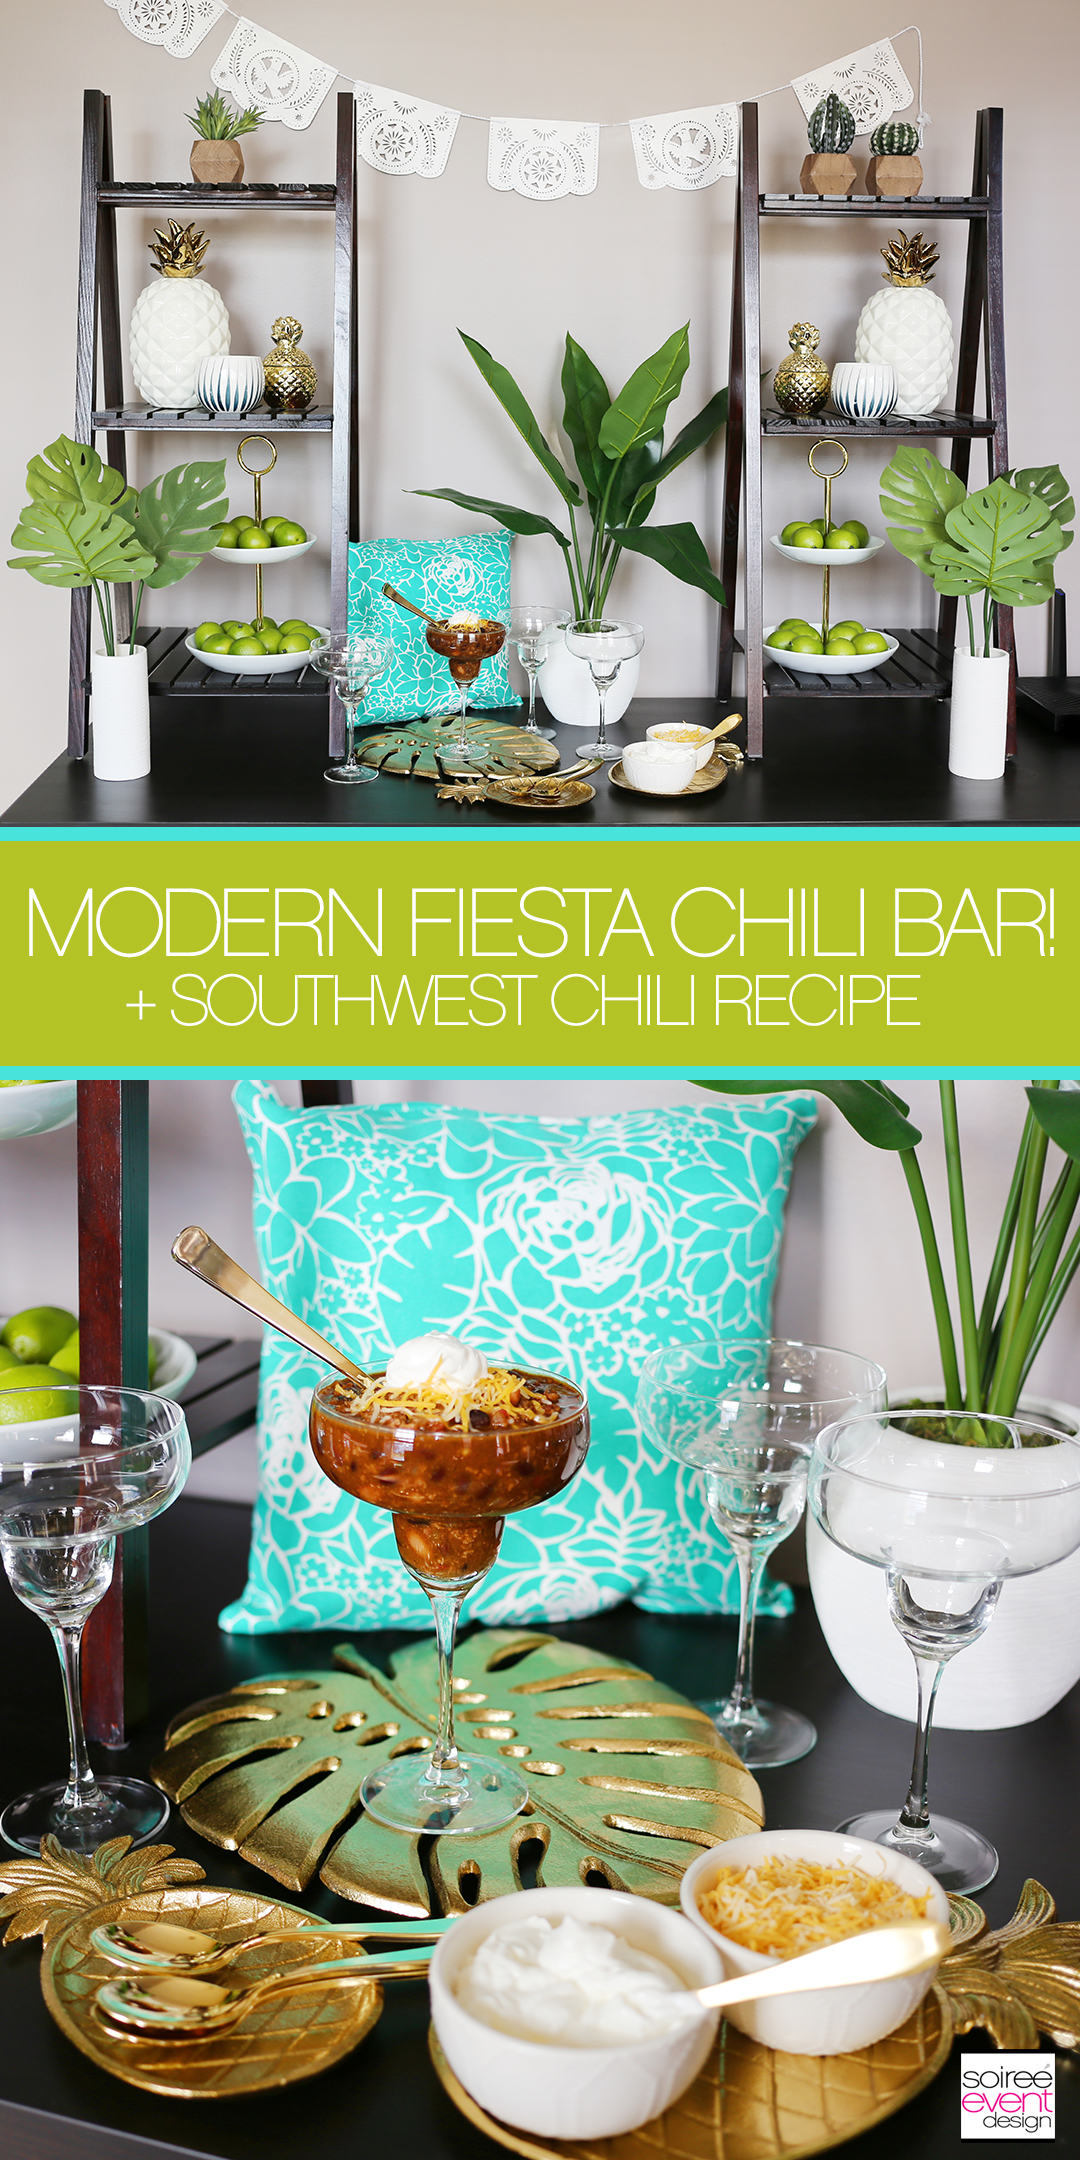 Set up a Modern Fiesta Chili Bar + Southwest Chili Recipe